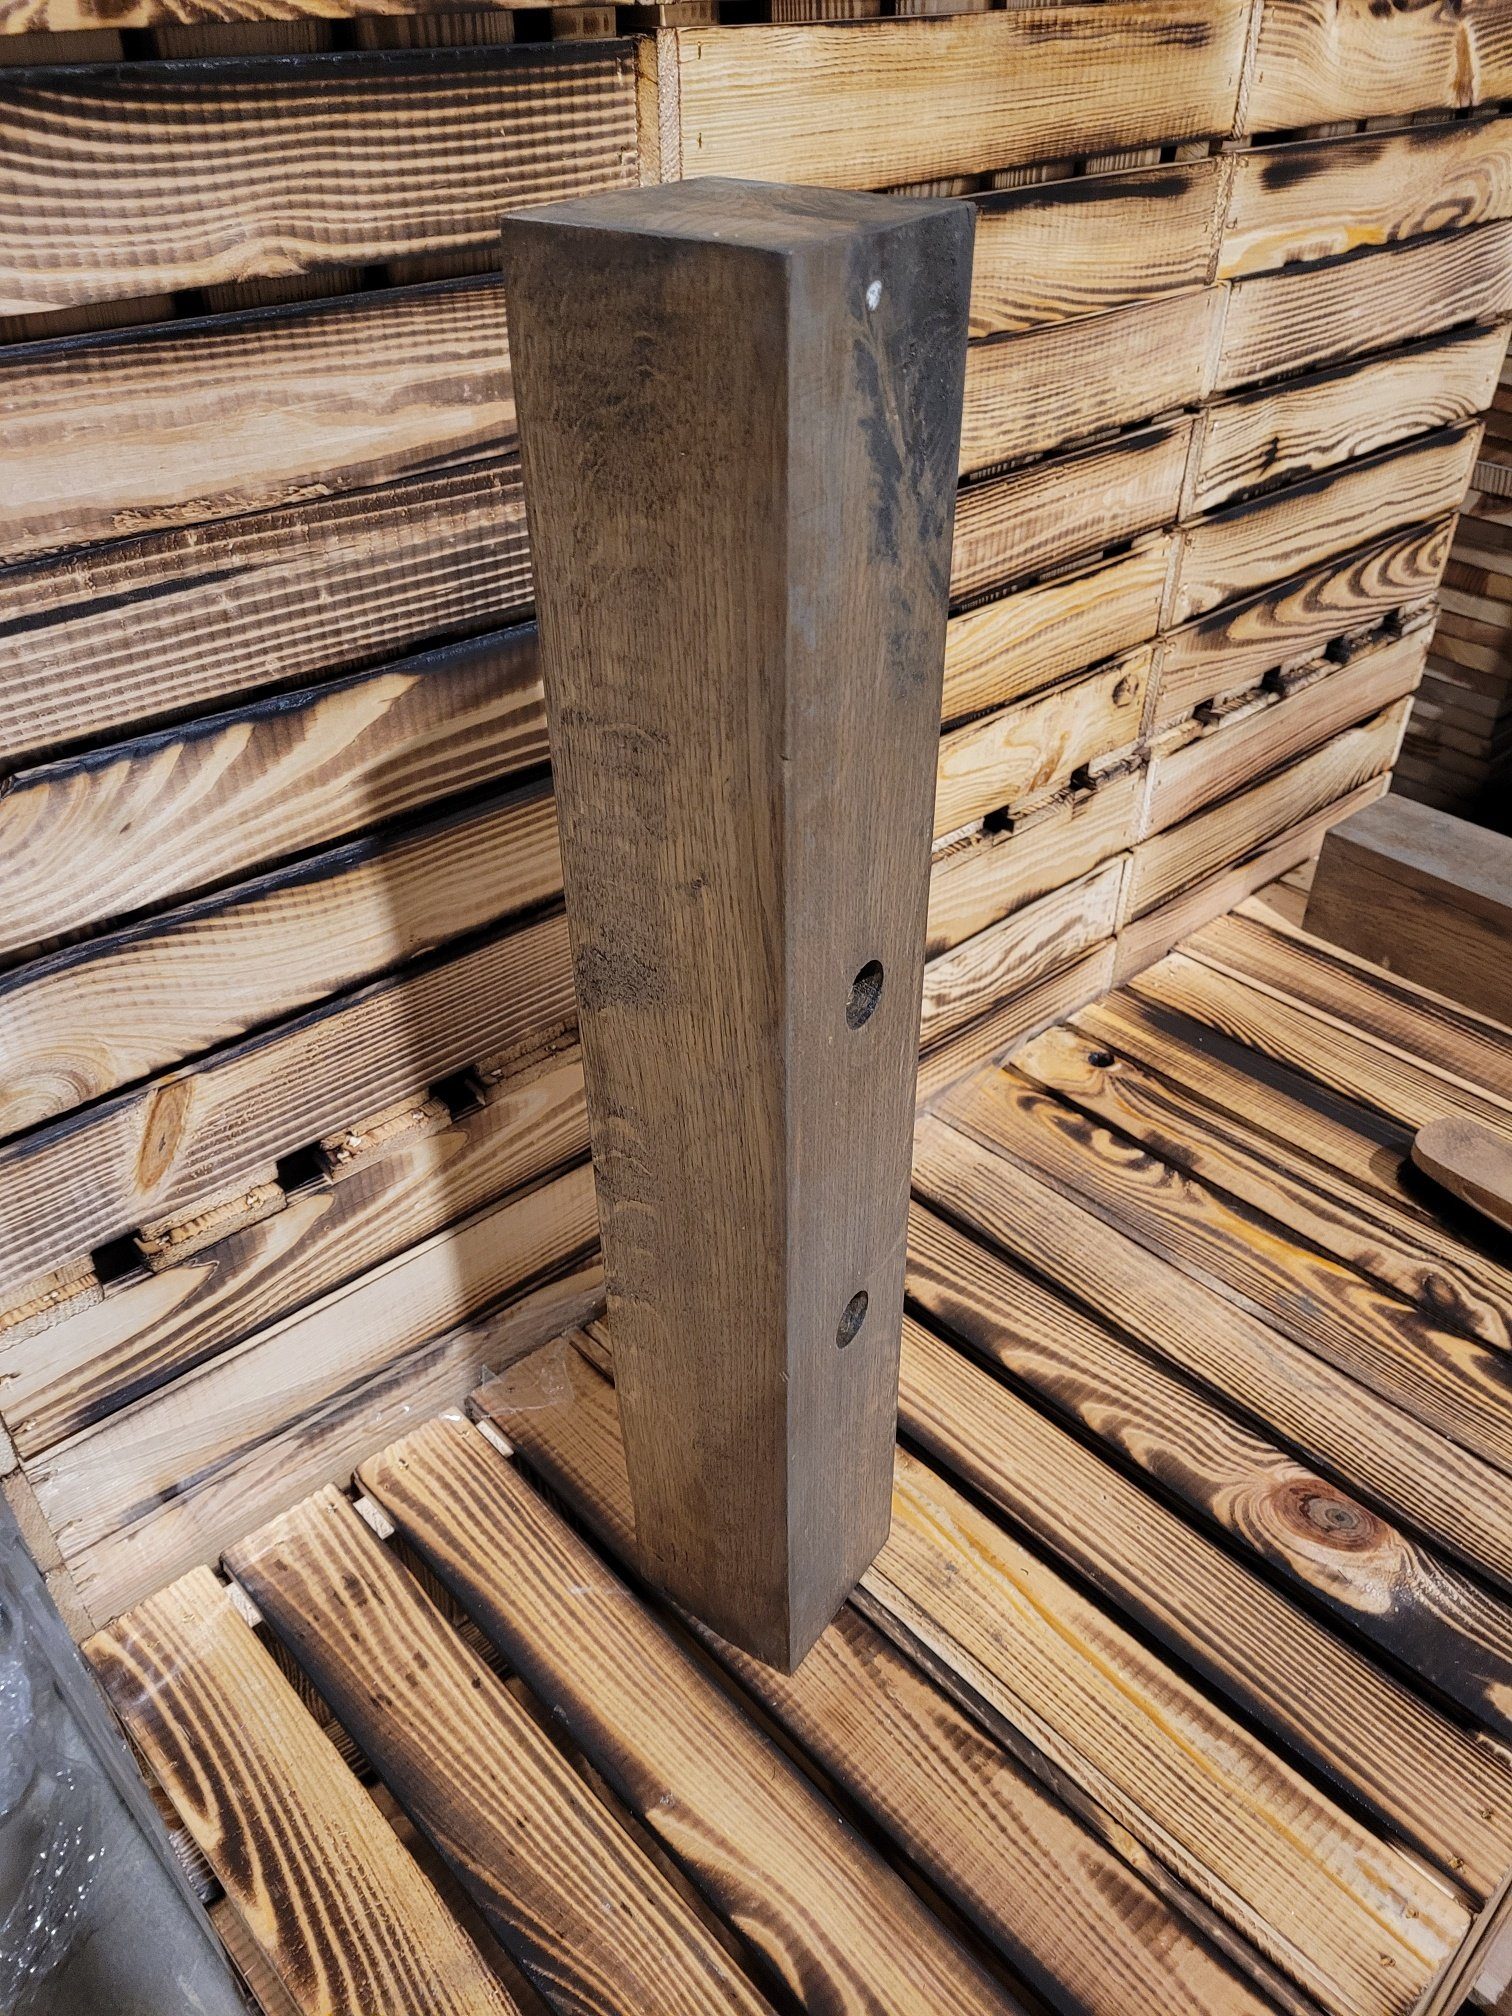 Kistenkolli Altes Land Allzweckkiste Holzbohle Eiche dunkel gebeizt (gebraucht massiv) mit Gebrauchspuren